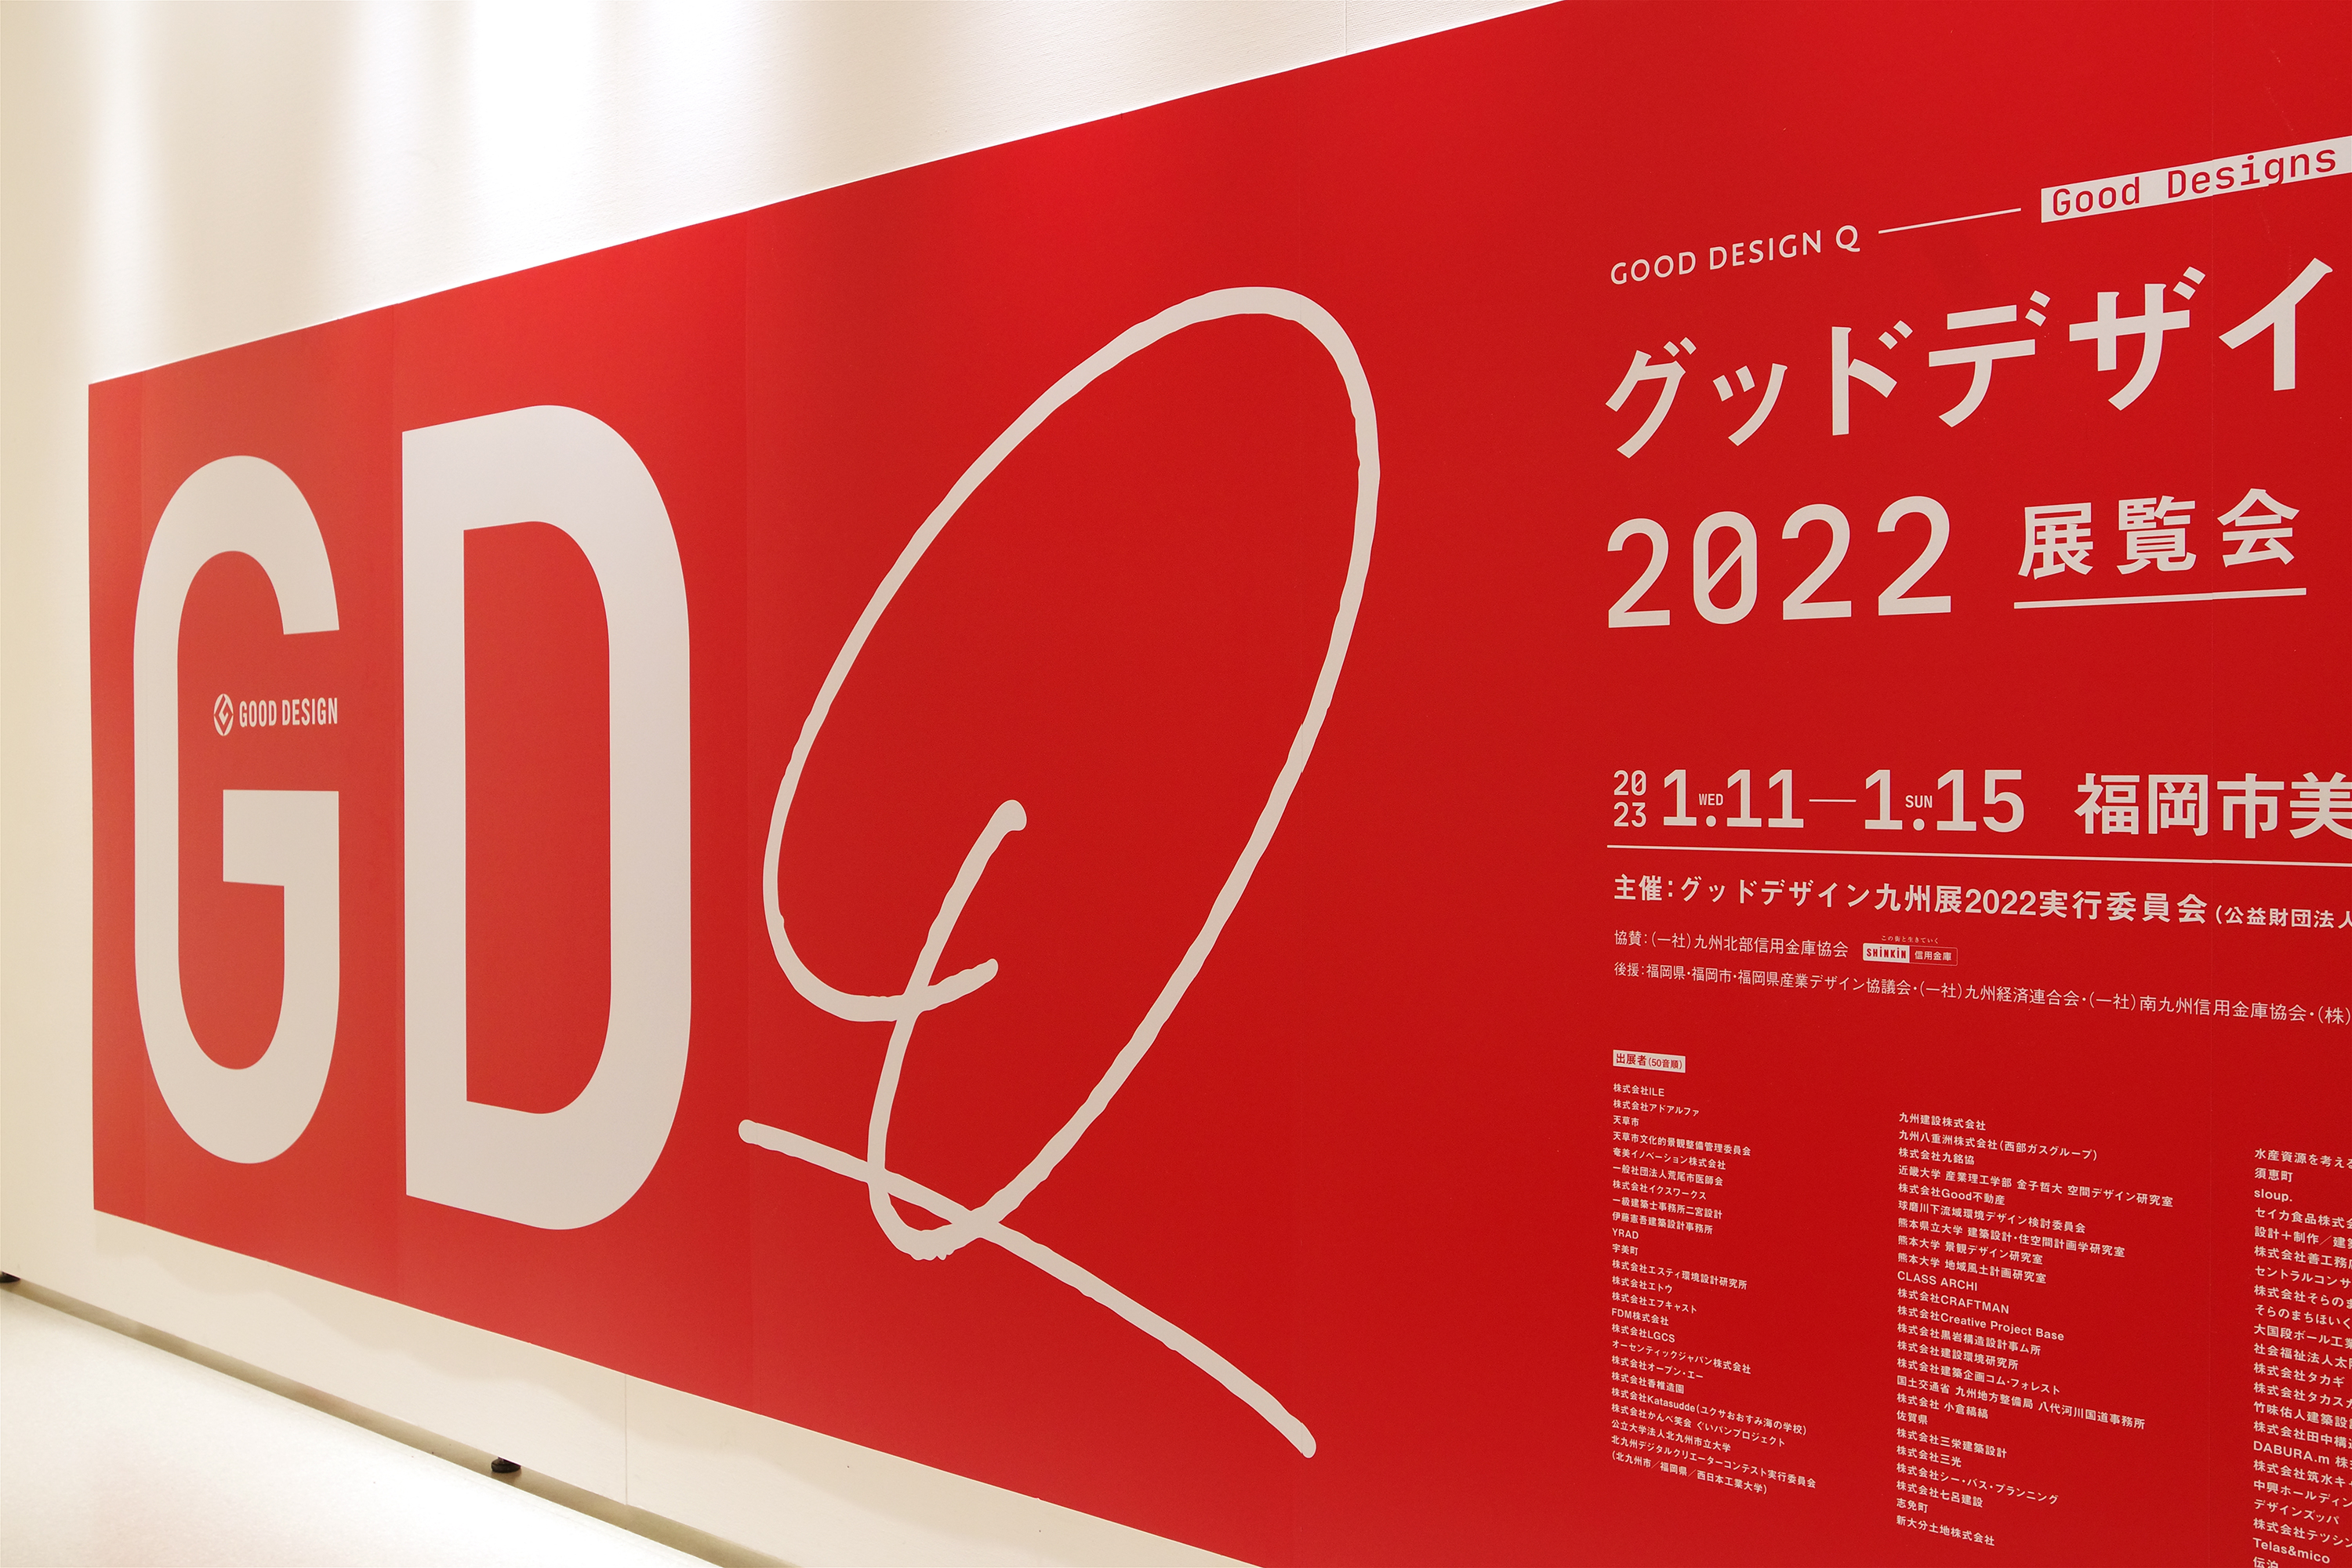 グッドデザイン九州展2022へのご来場ありがとうございました。